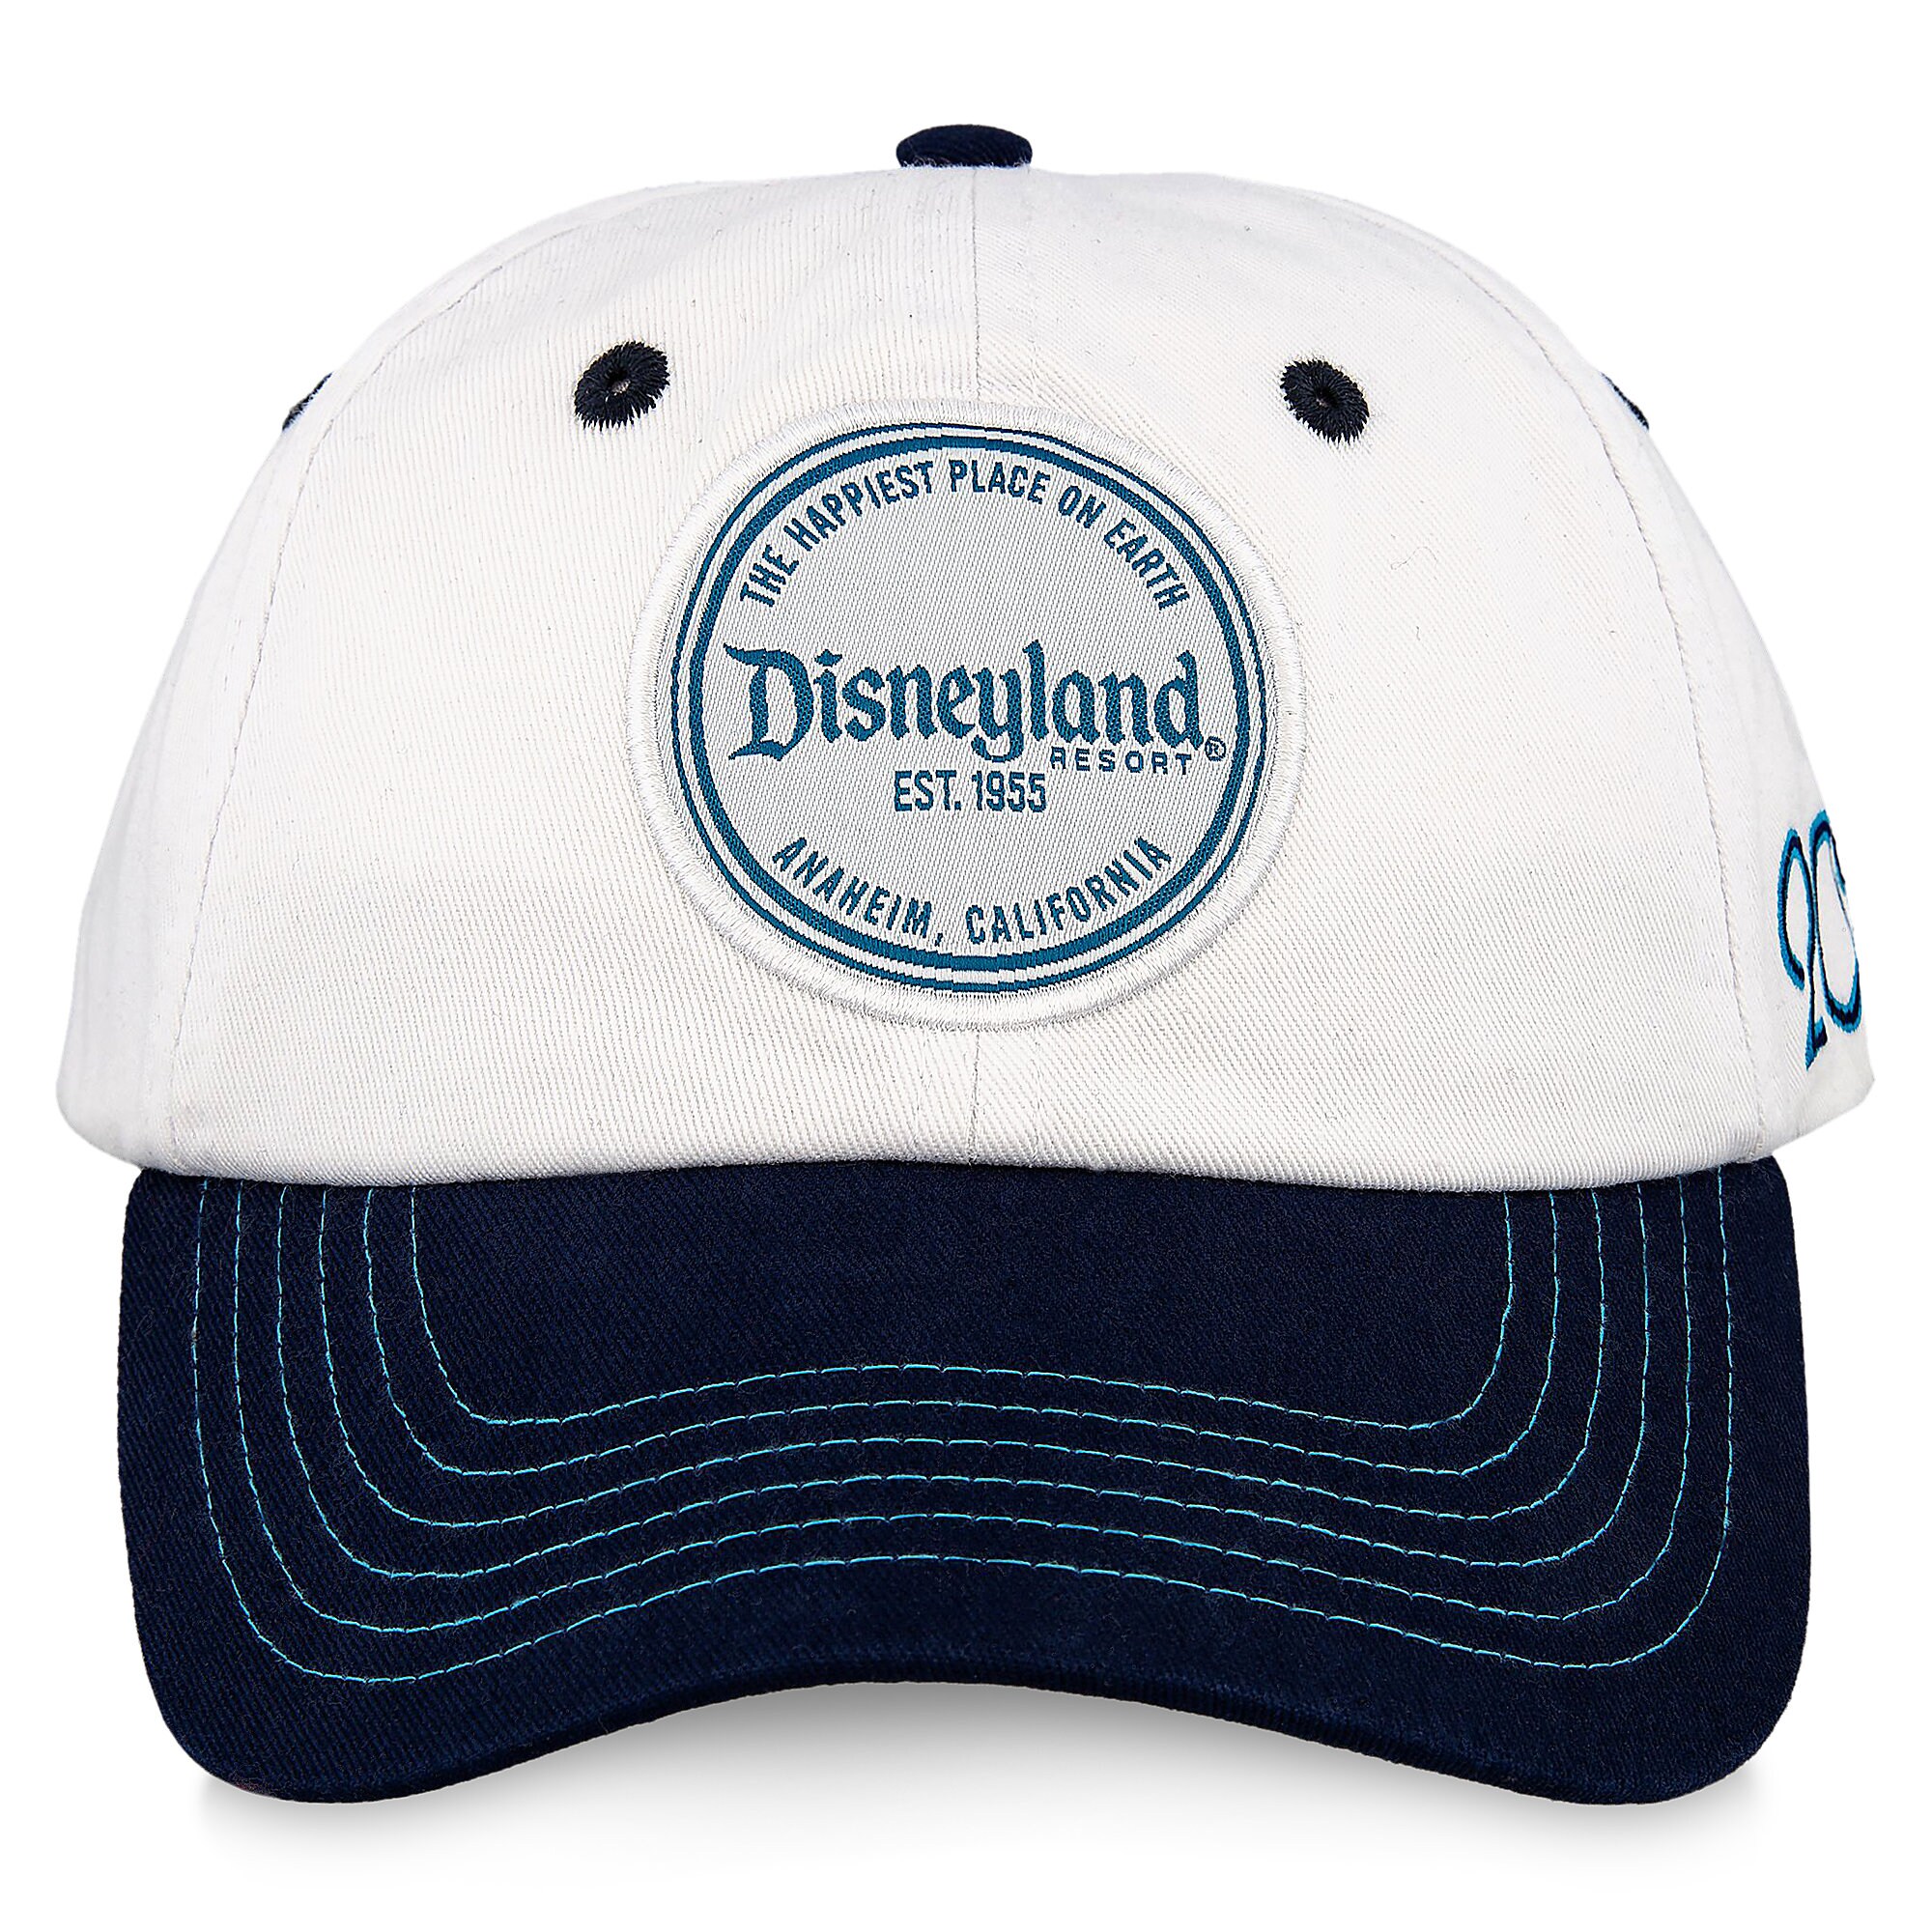 Disneyland Resort 2019 Baseball Cap for Adults